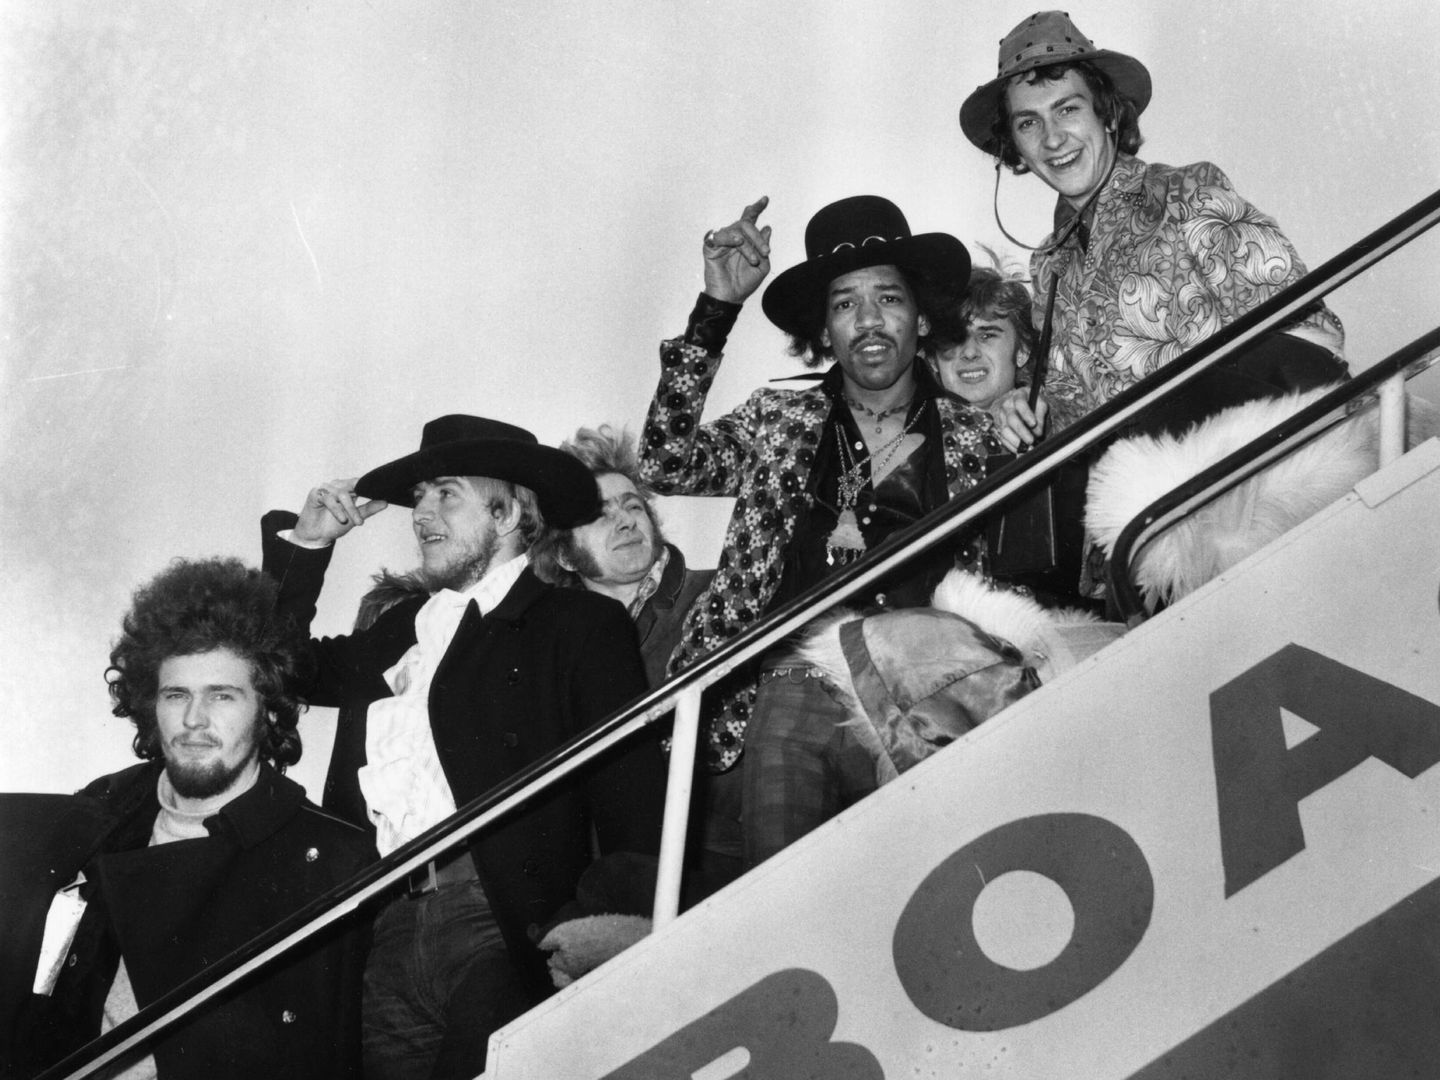 Jimi Hendrix con su banda (Gett Images).